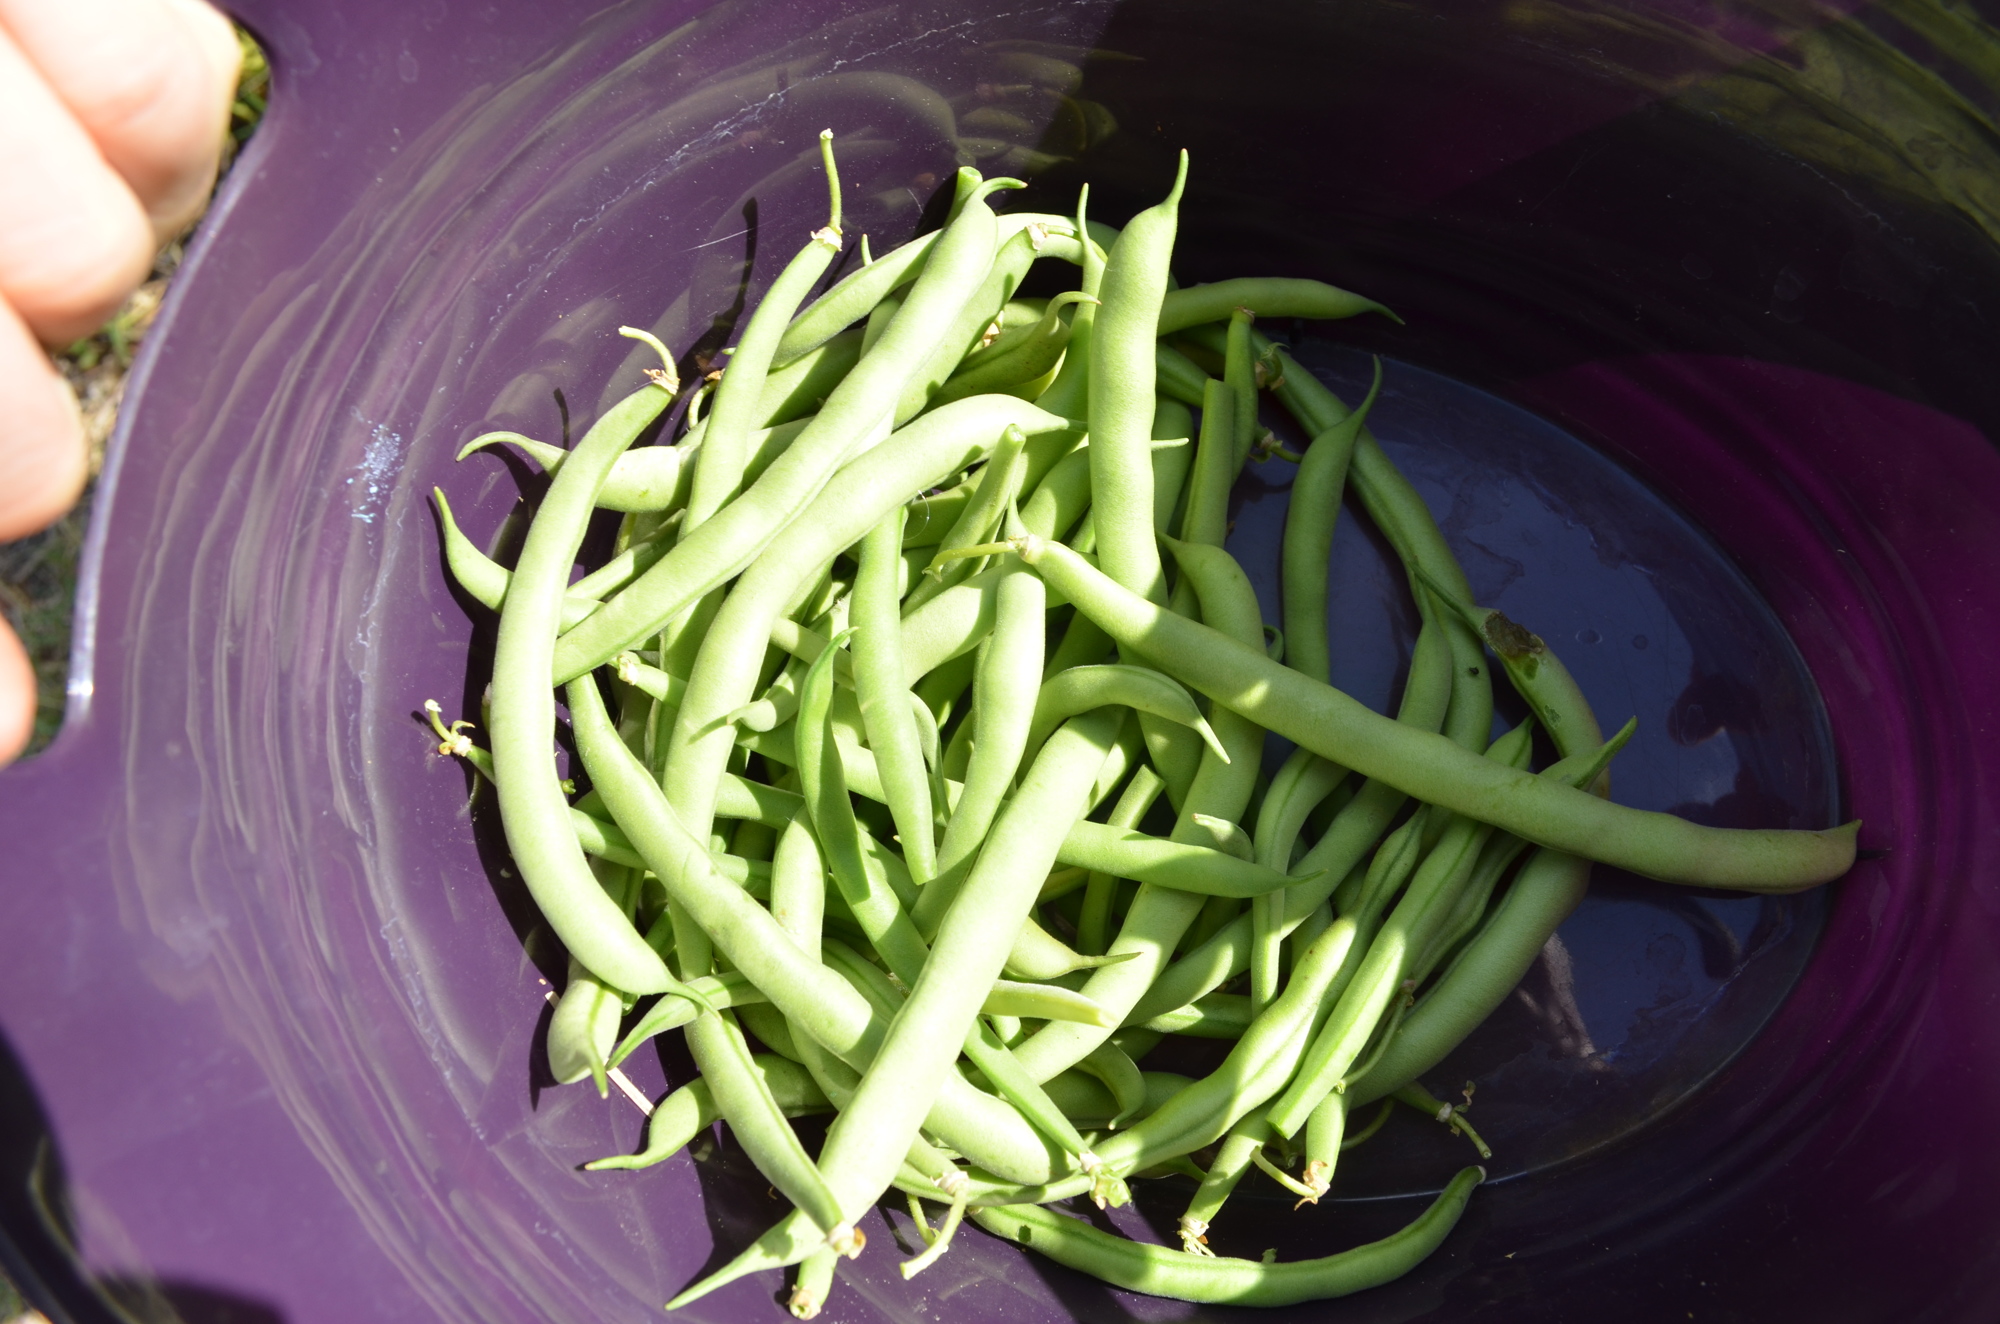 Green beans from the Goldie Feldman Academy garden.